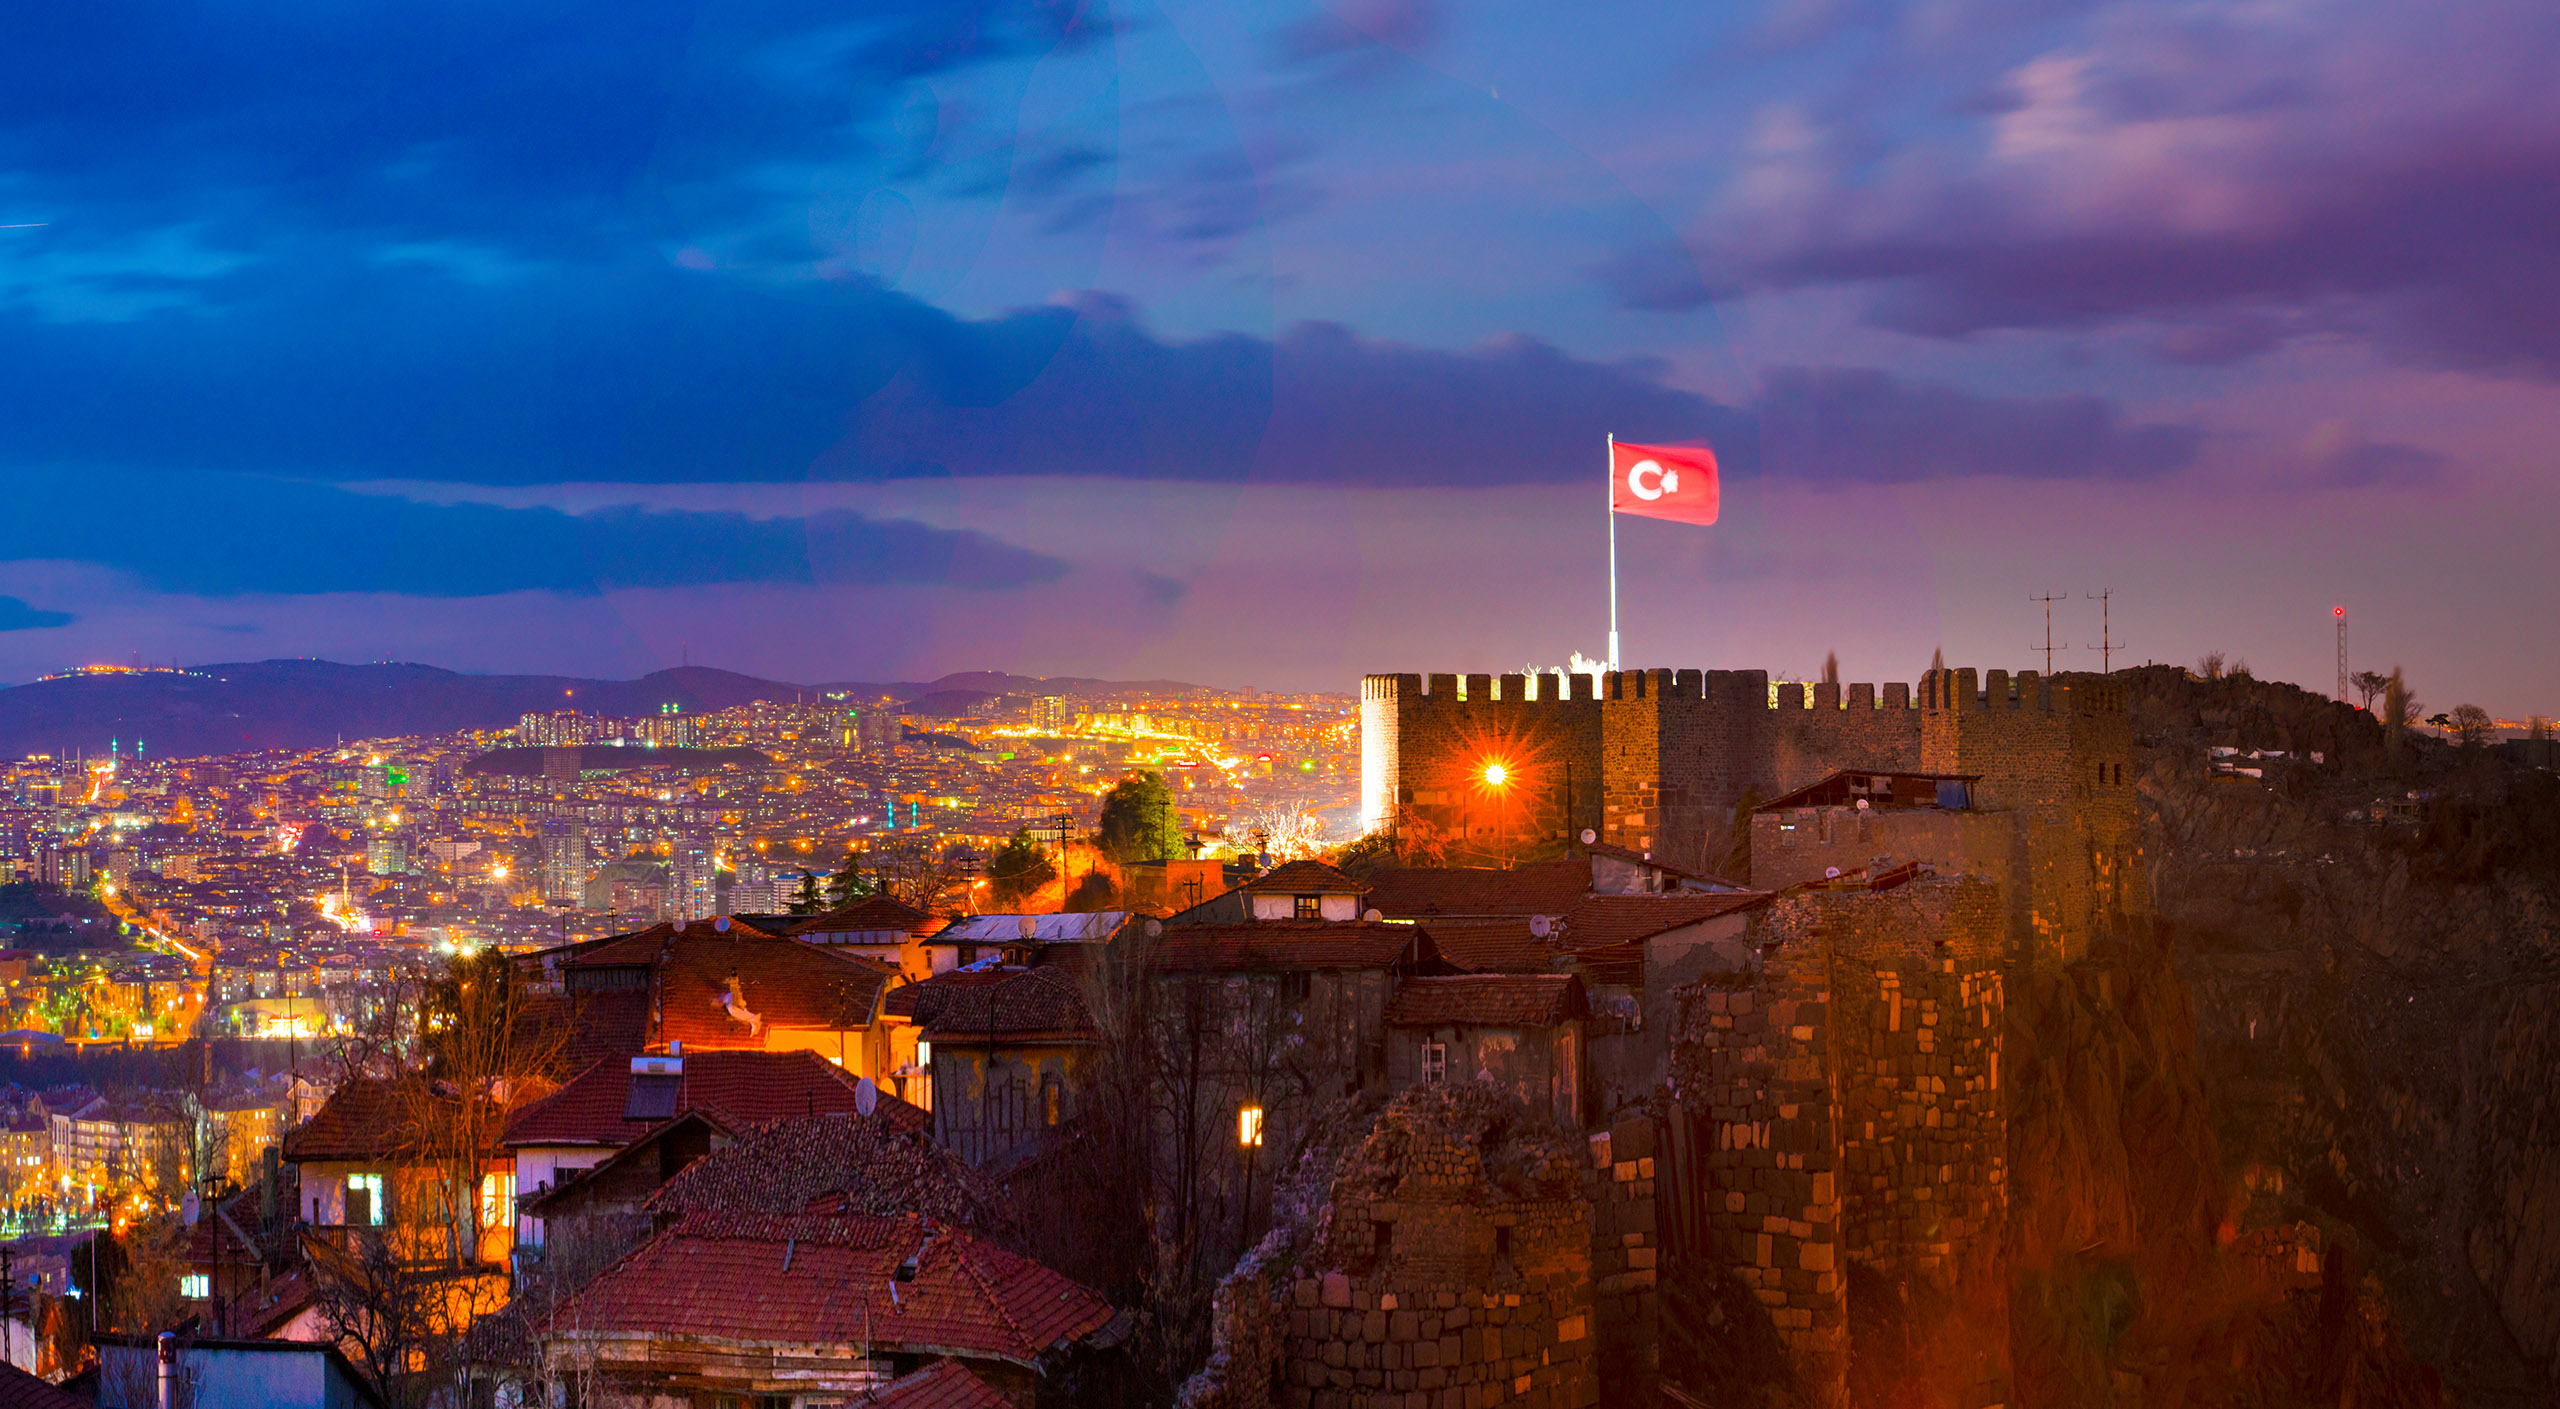 Citadel of Ankara in the night, Ankara, Turkey